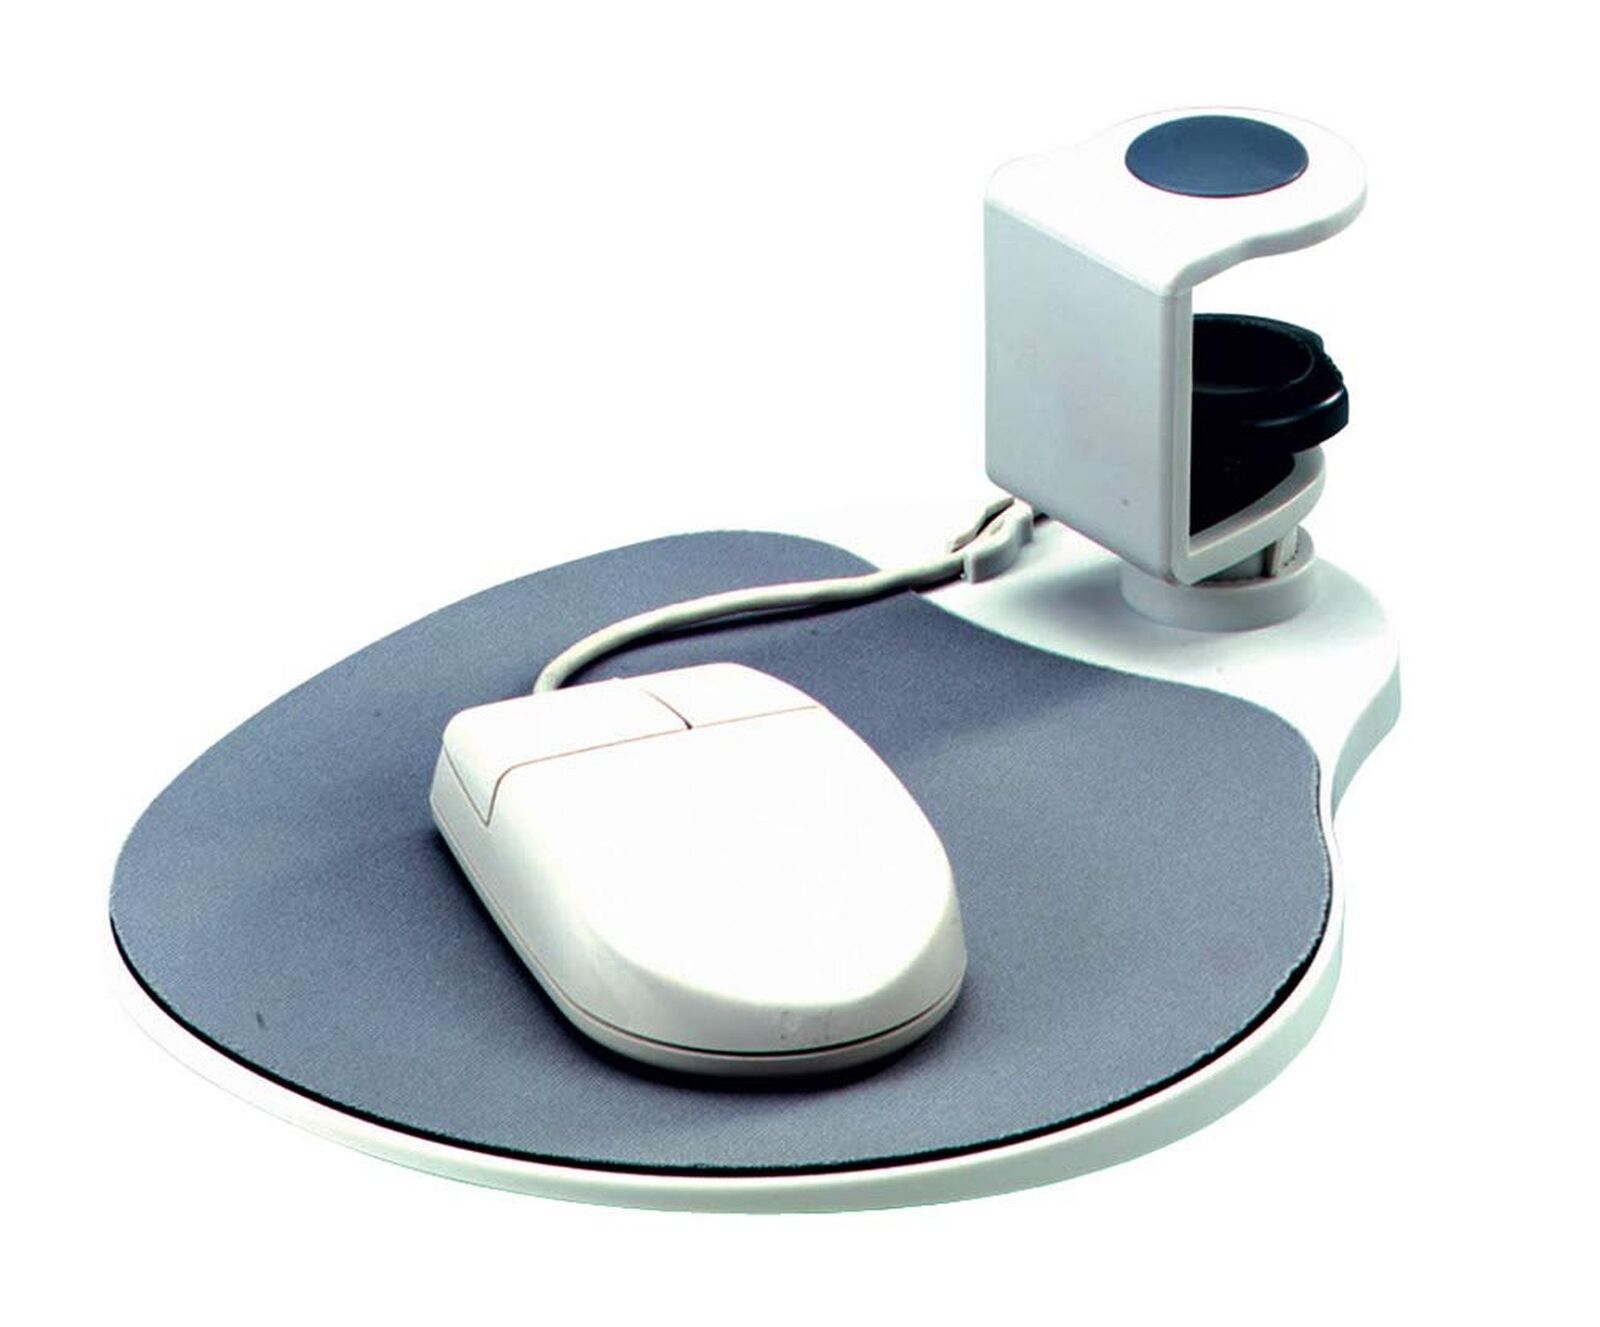 Aidata UM003 Mouse Platform Under Desk, Sturdy Metal Clamp Fits Onto Desks up...